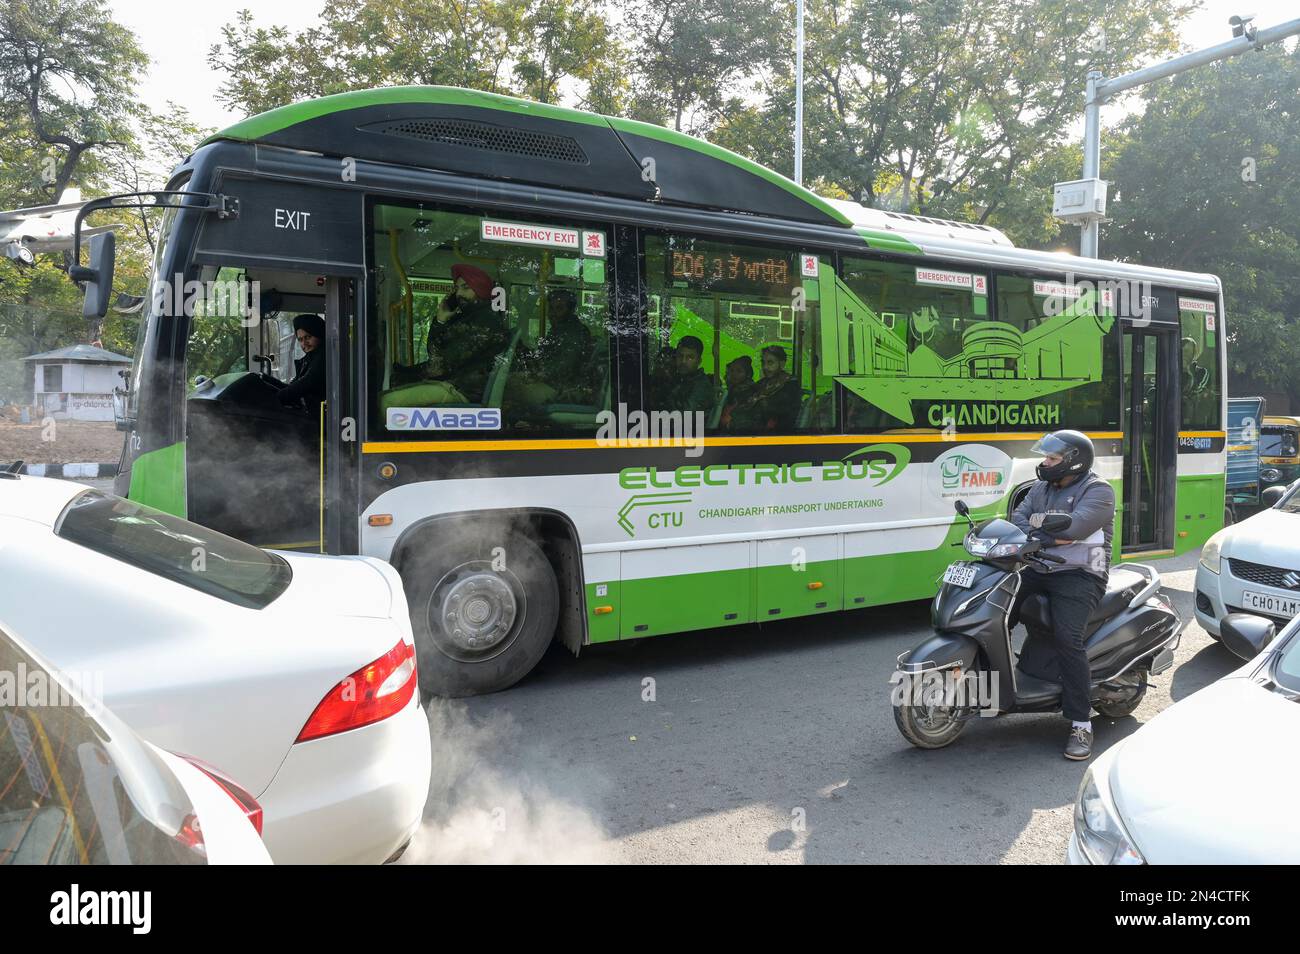 INDIEN, Chandigarh, Ashok Leyland Elektrobus für öffentliche Verkehrsmittel Stockfoto